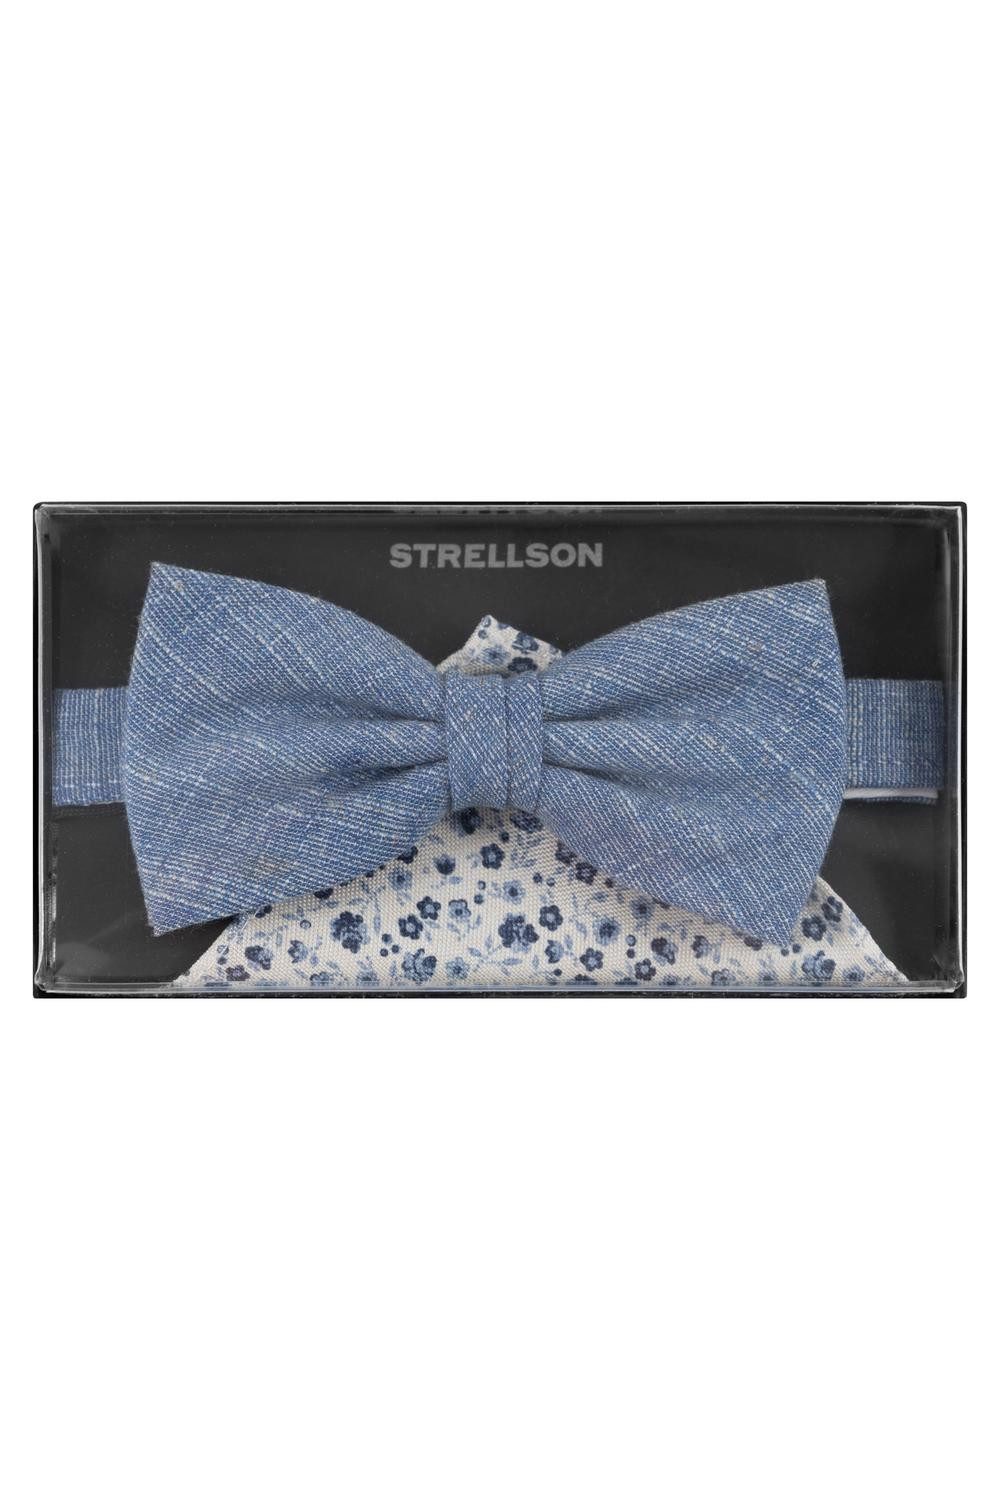 Strellson Krawatte 11 SET_2 10015707